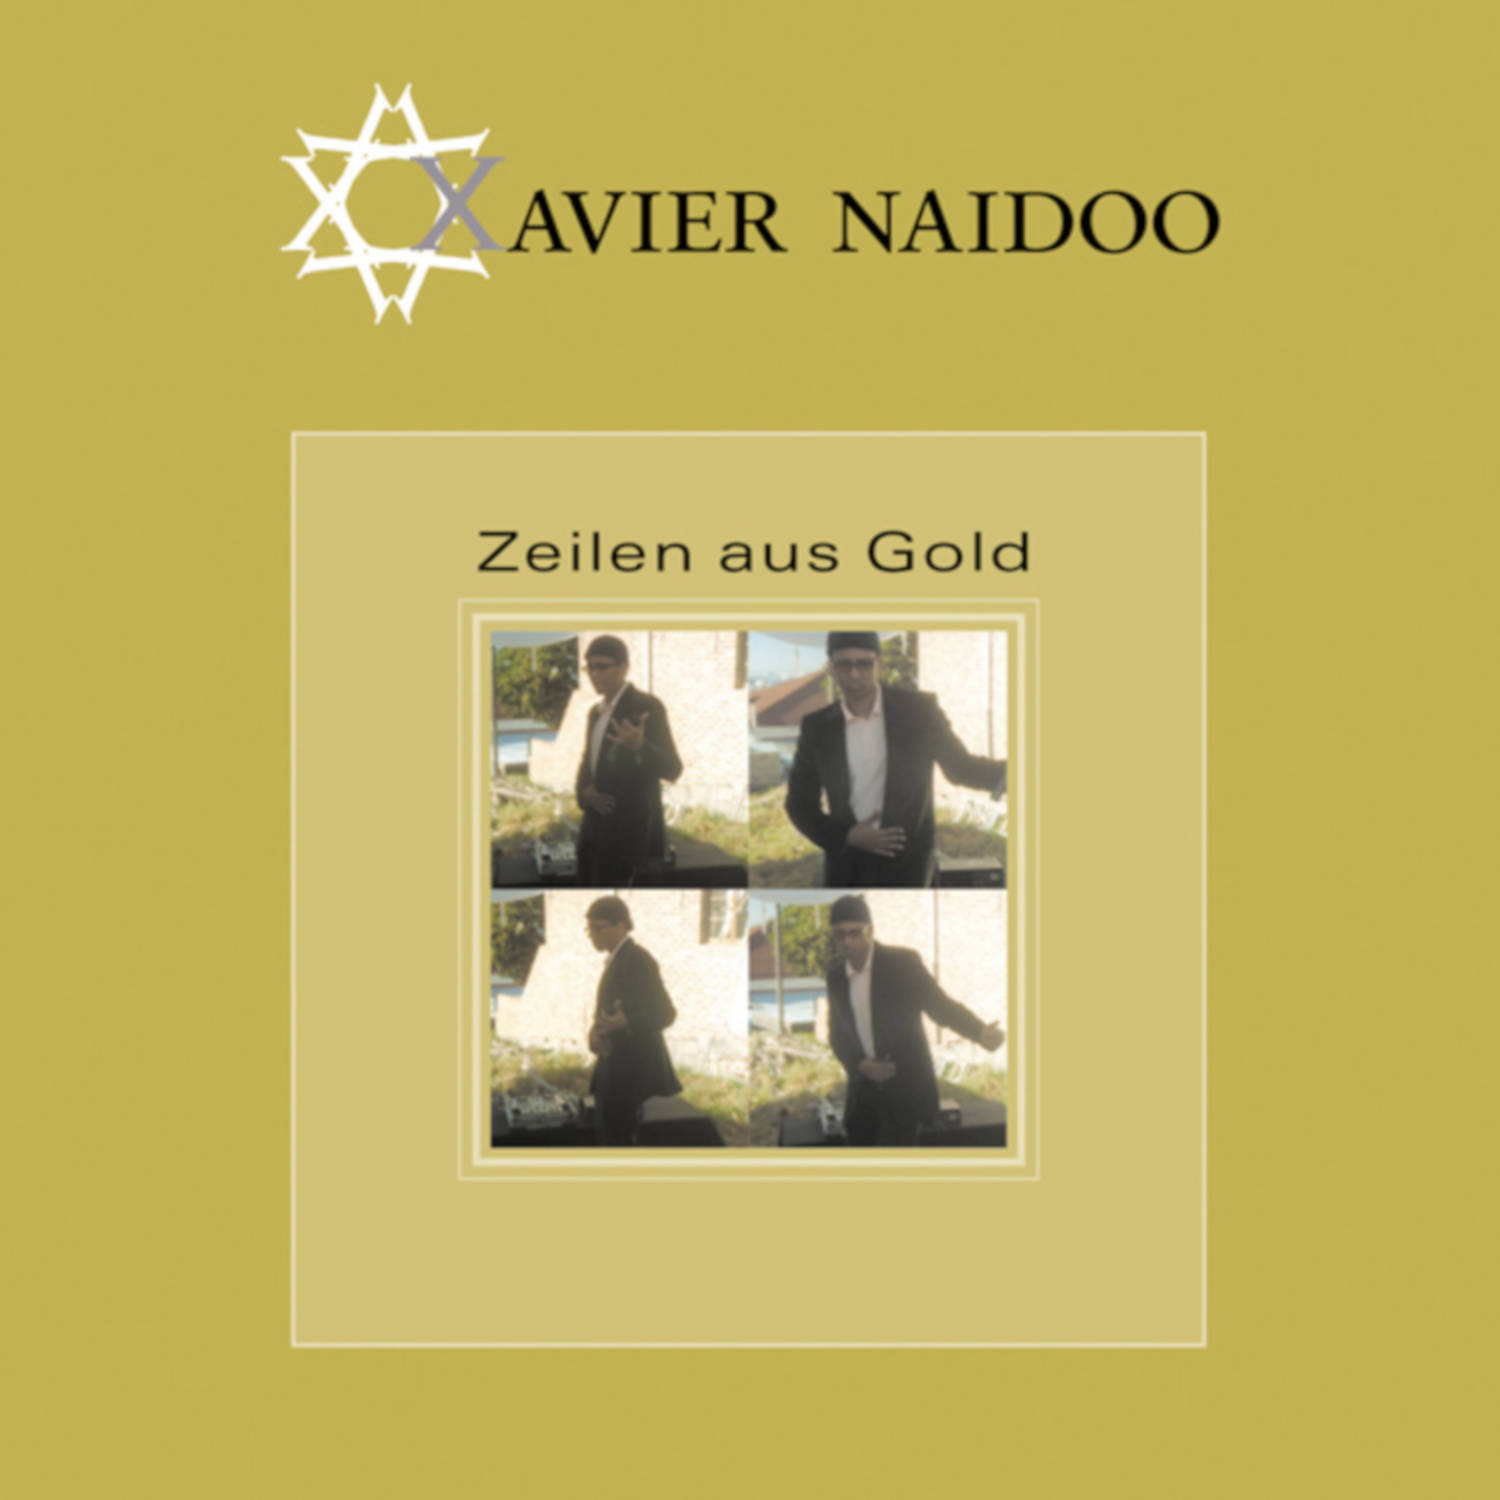 Zeilen aus Gold (Remixes)